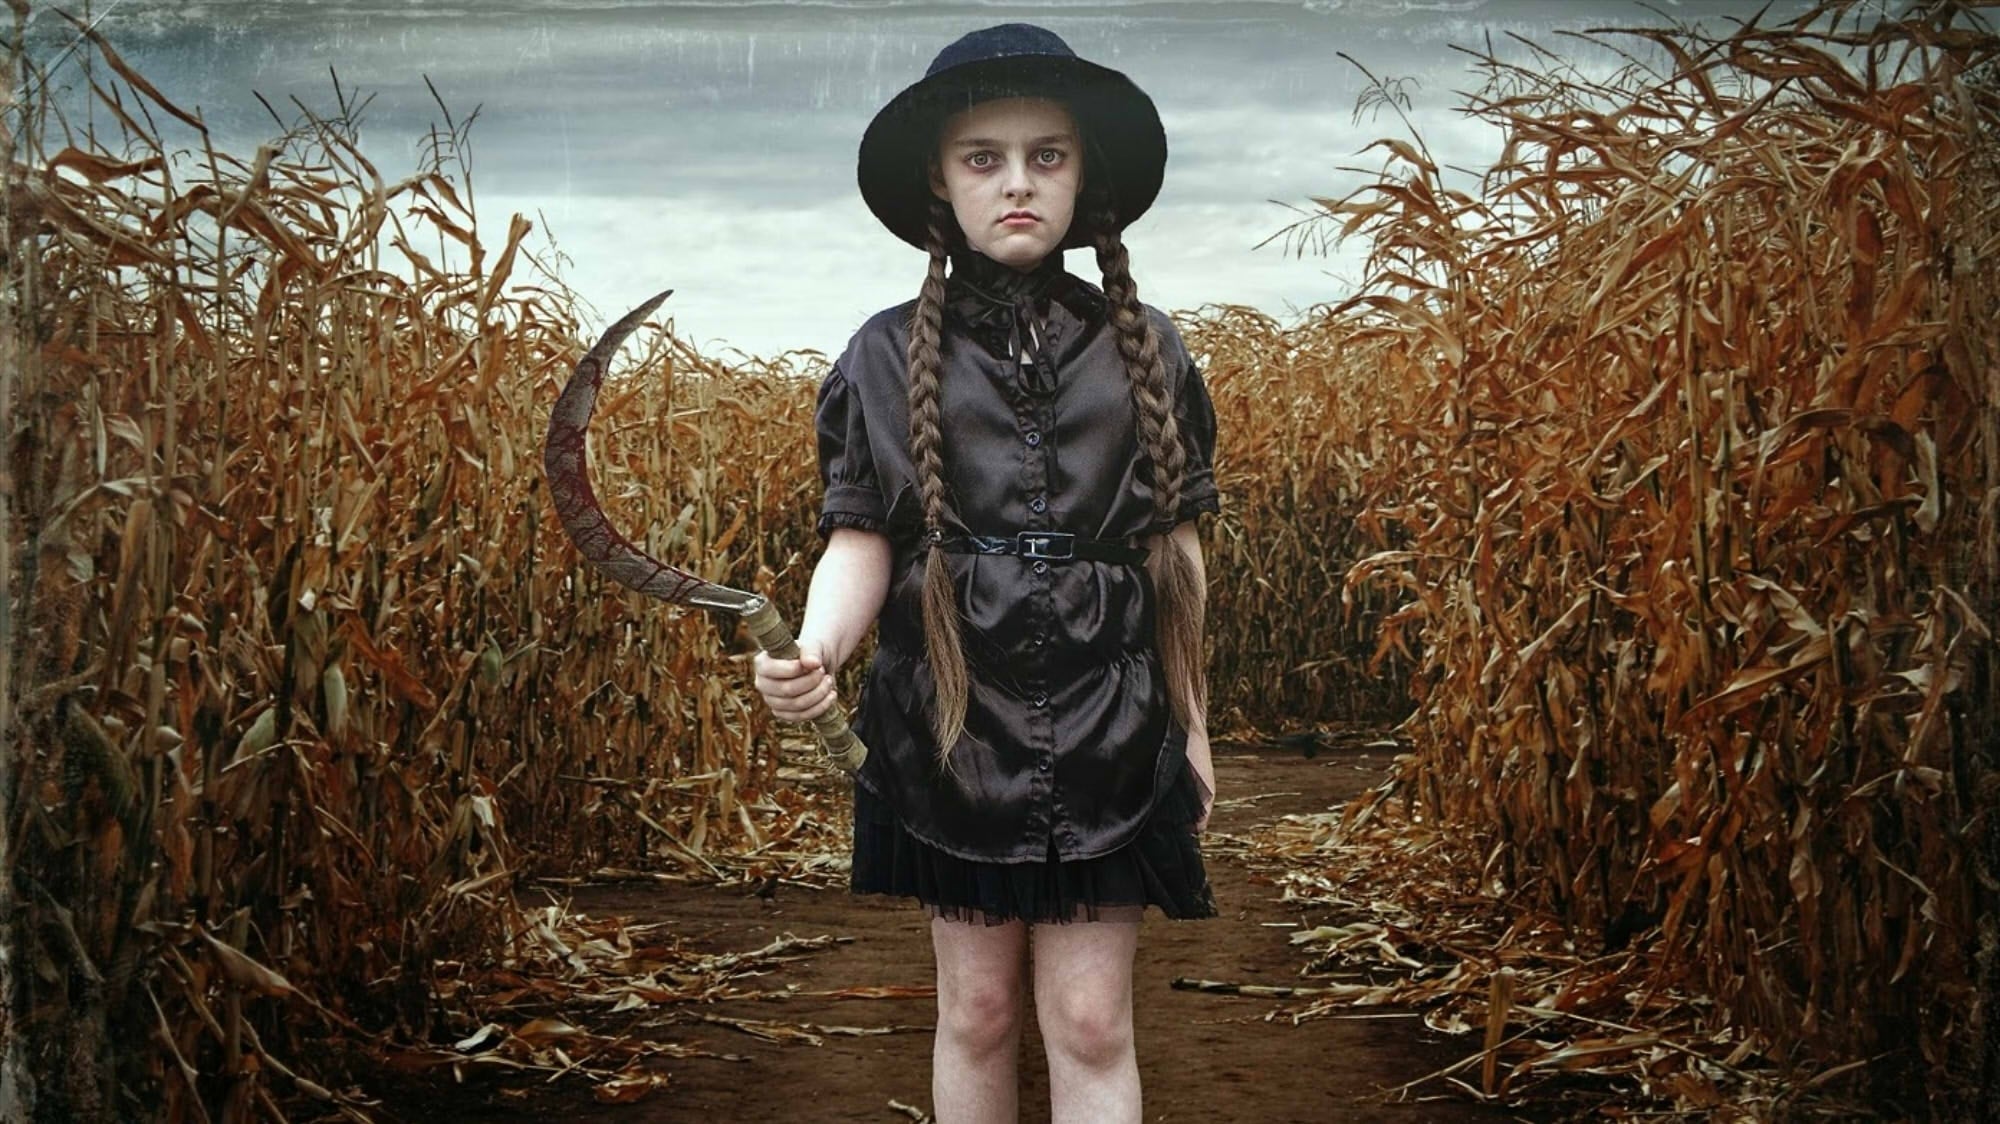 Children of the Corn: Runaway